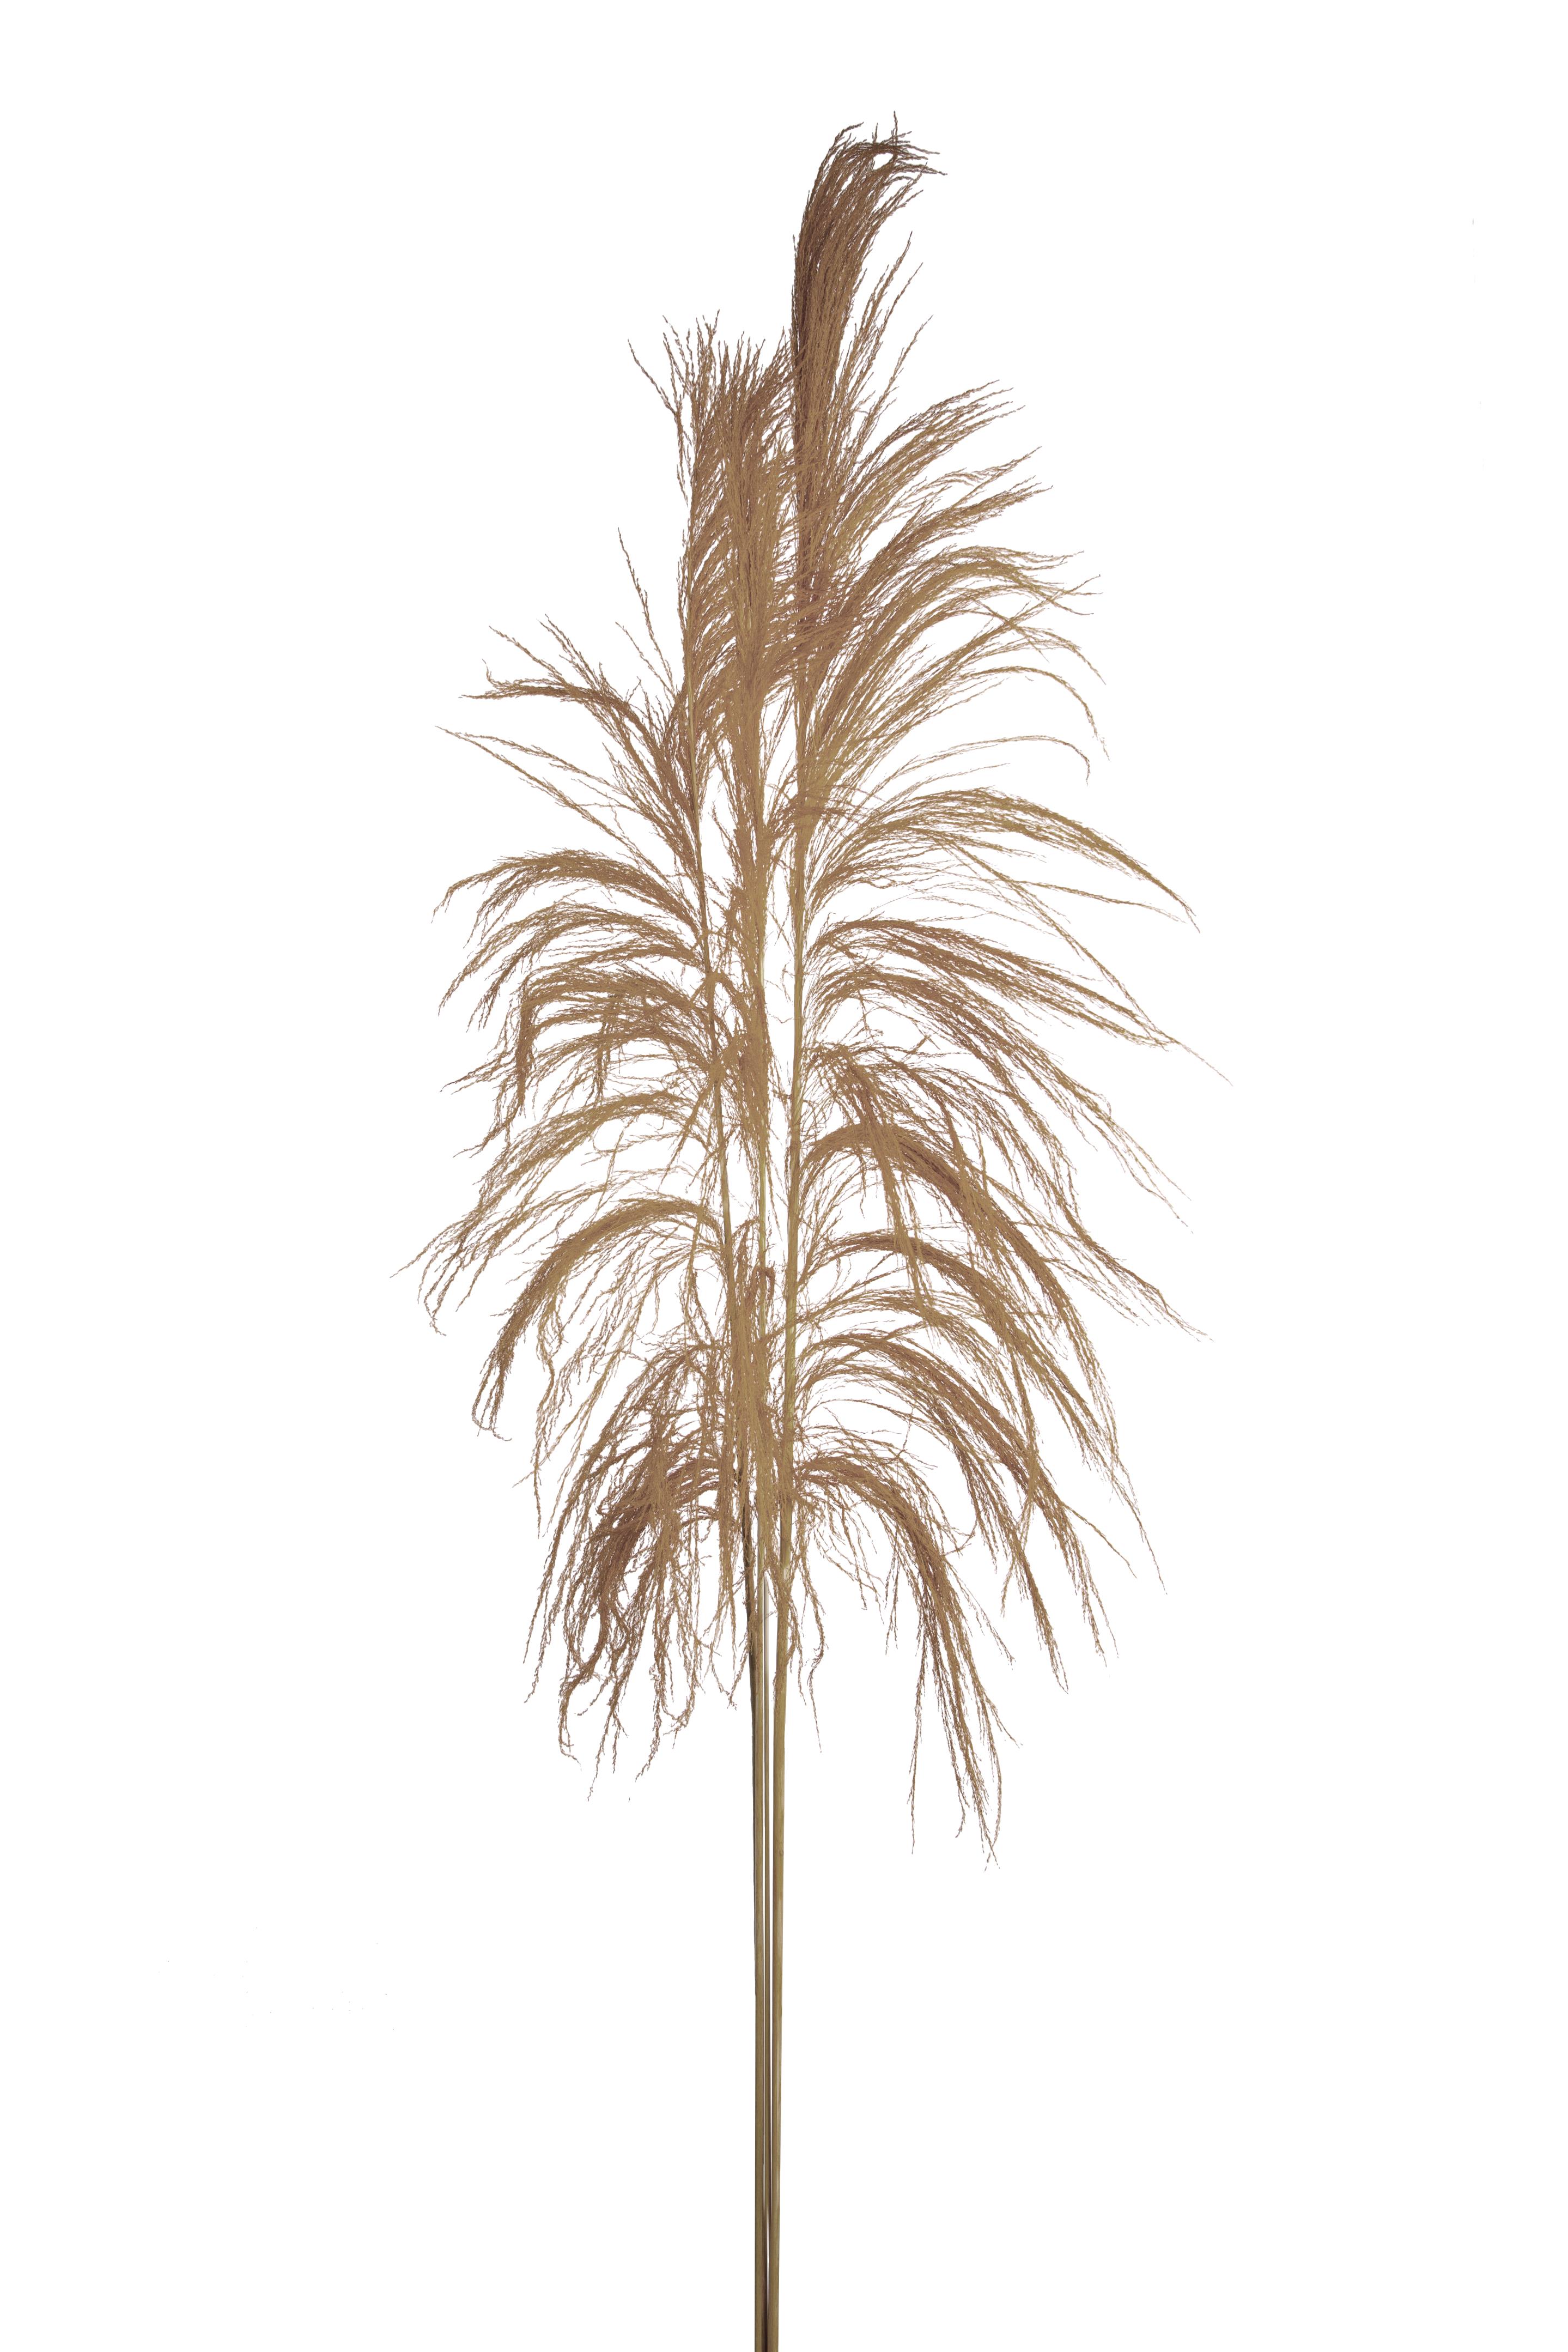 Trockenblumen, Exotisch, Zweige und Dekorationen, CANA BRAVA 150 CM C.A. NAT 1 PZ